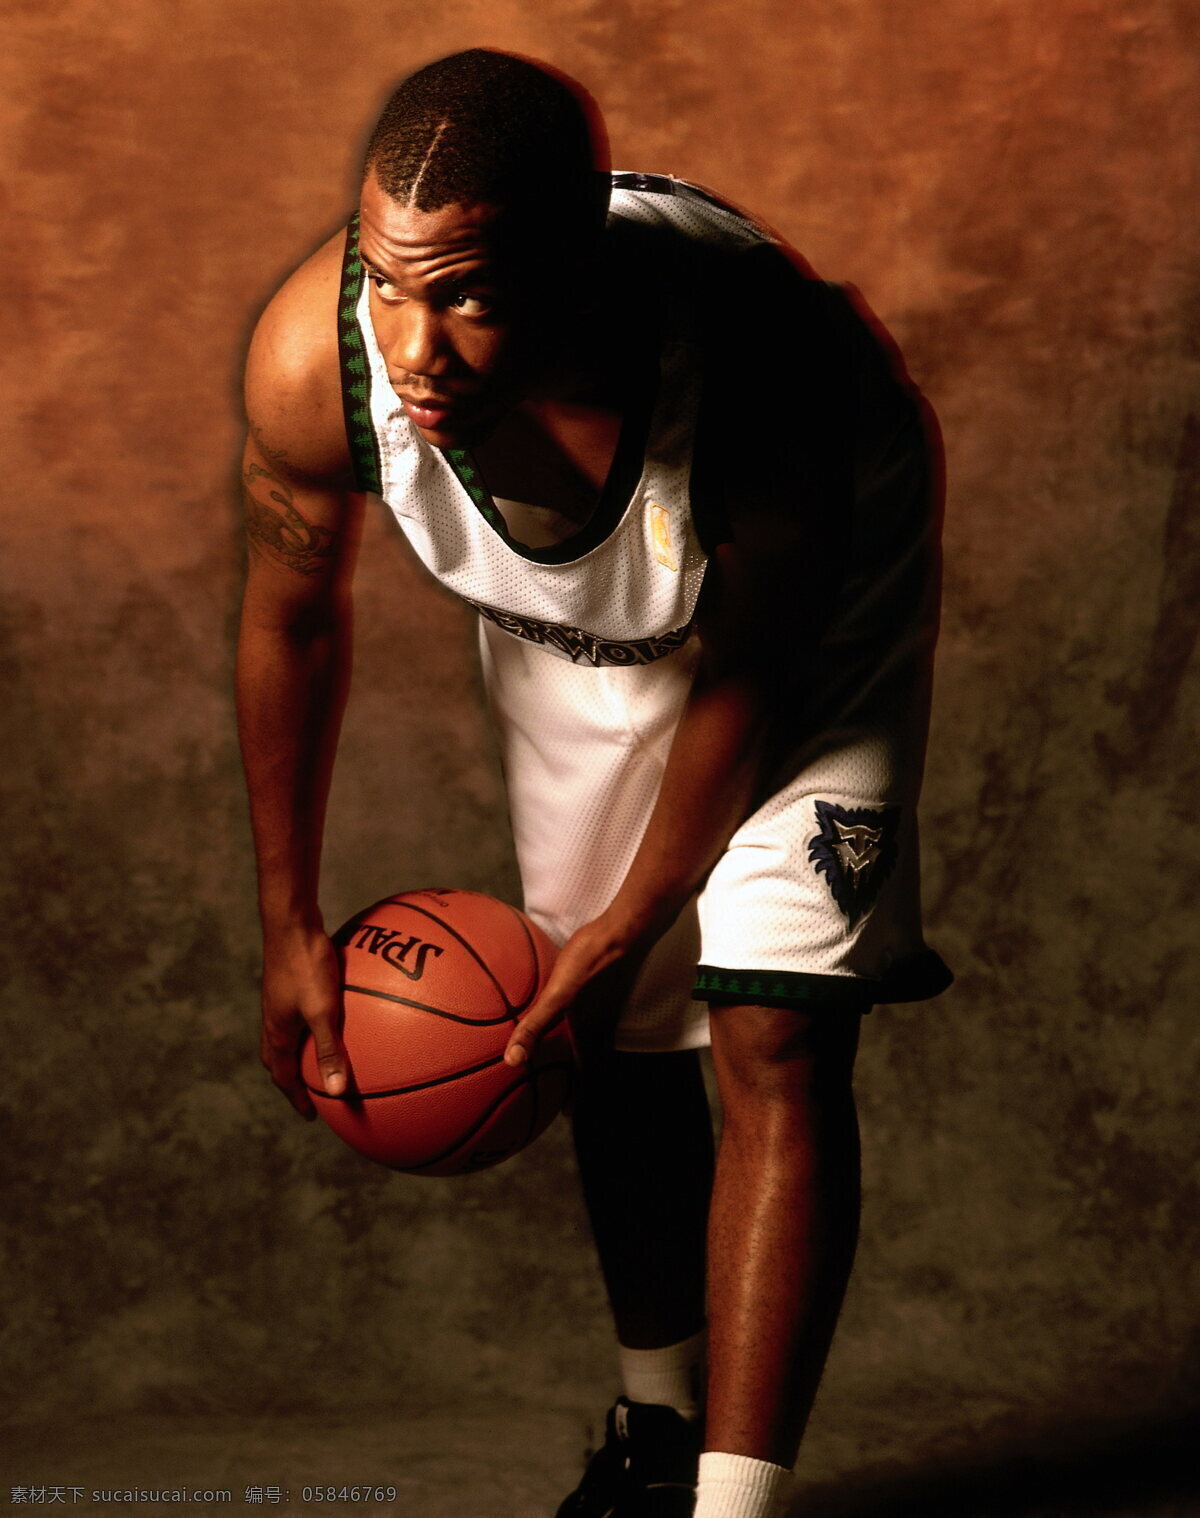 nba 高清 篮球 明星偶像 人物图库 摄影图库 体育 运动 马布里 明星图片 nba明星 psd源文件